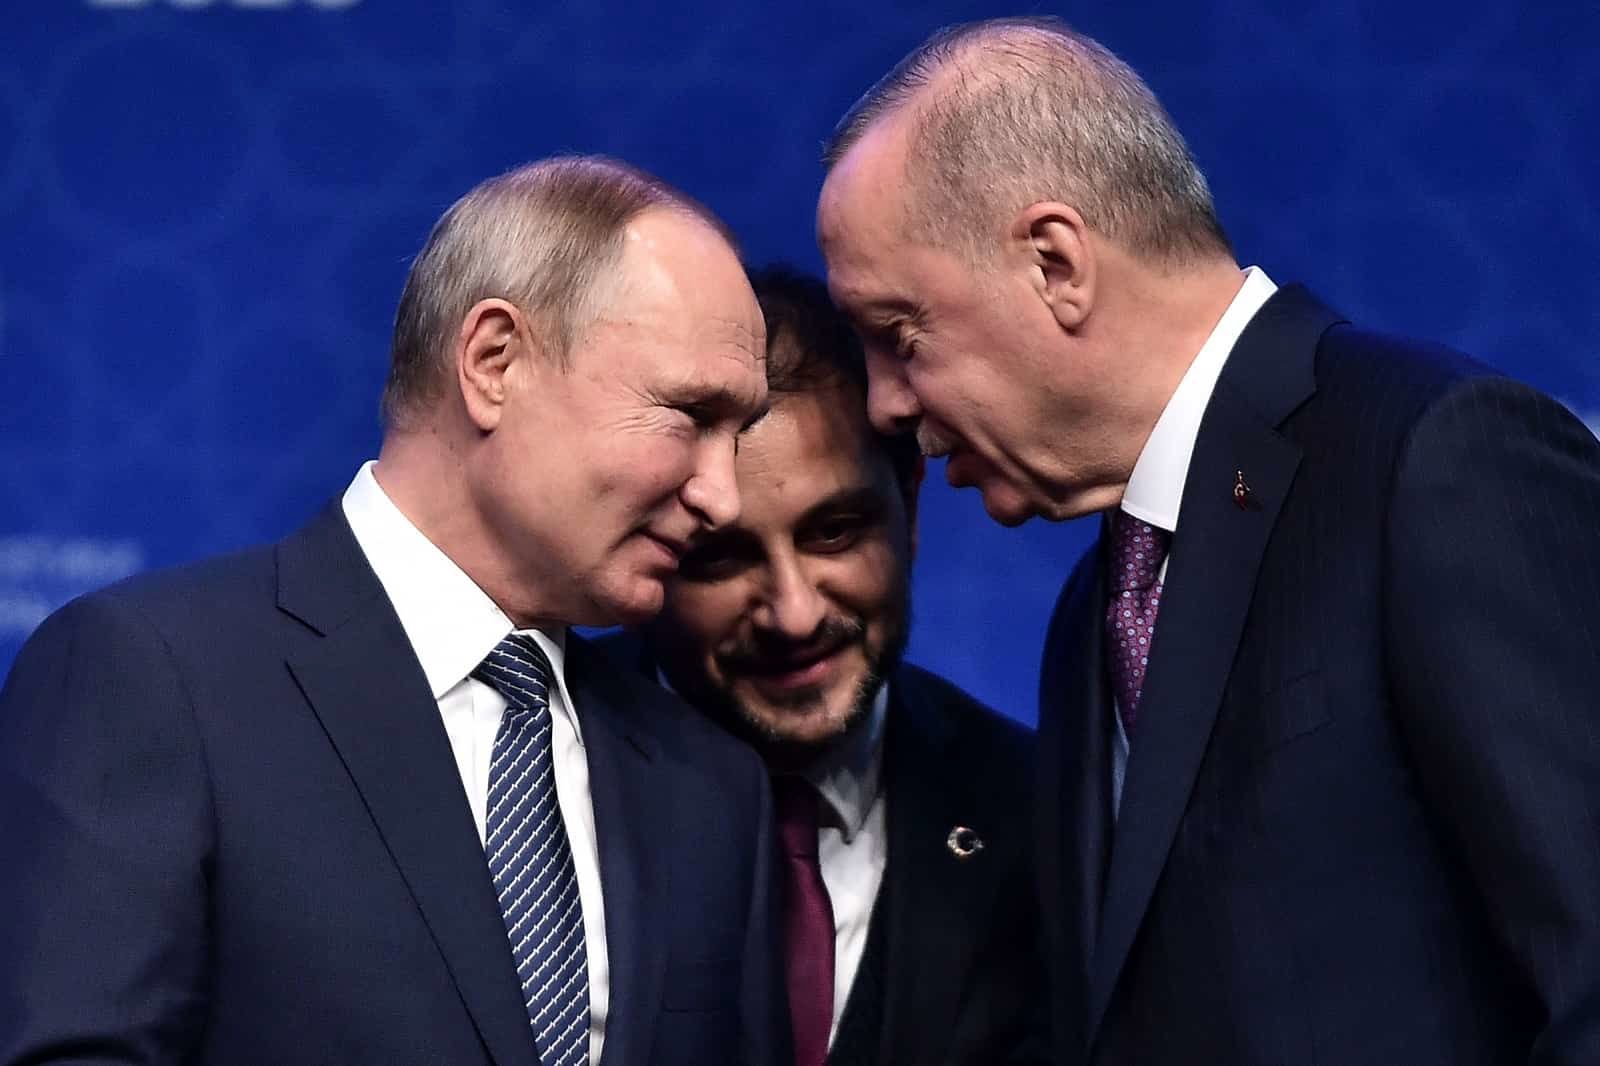 Putin and Erdogan compressed